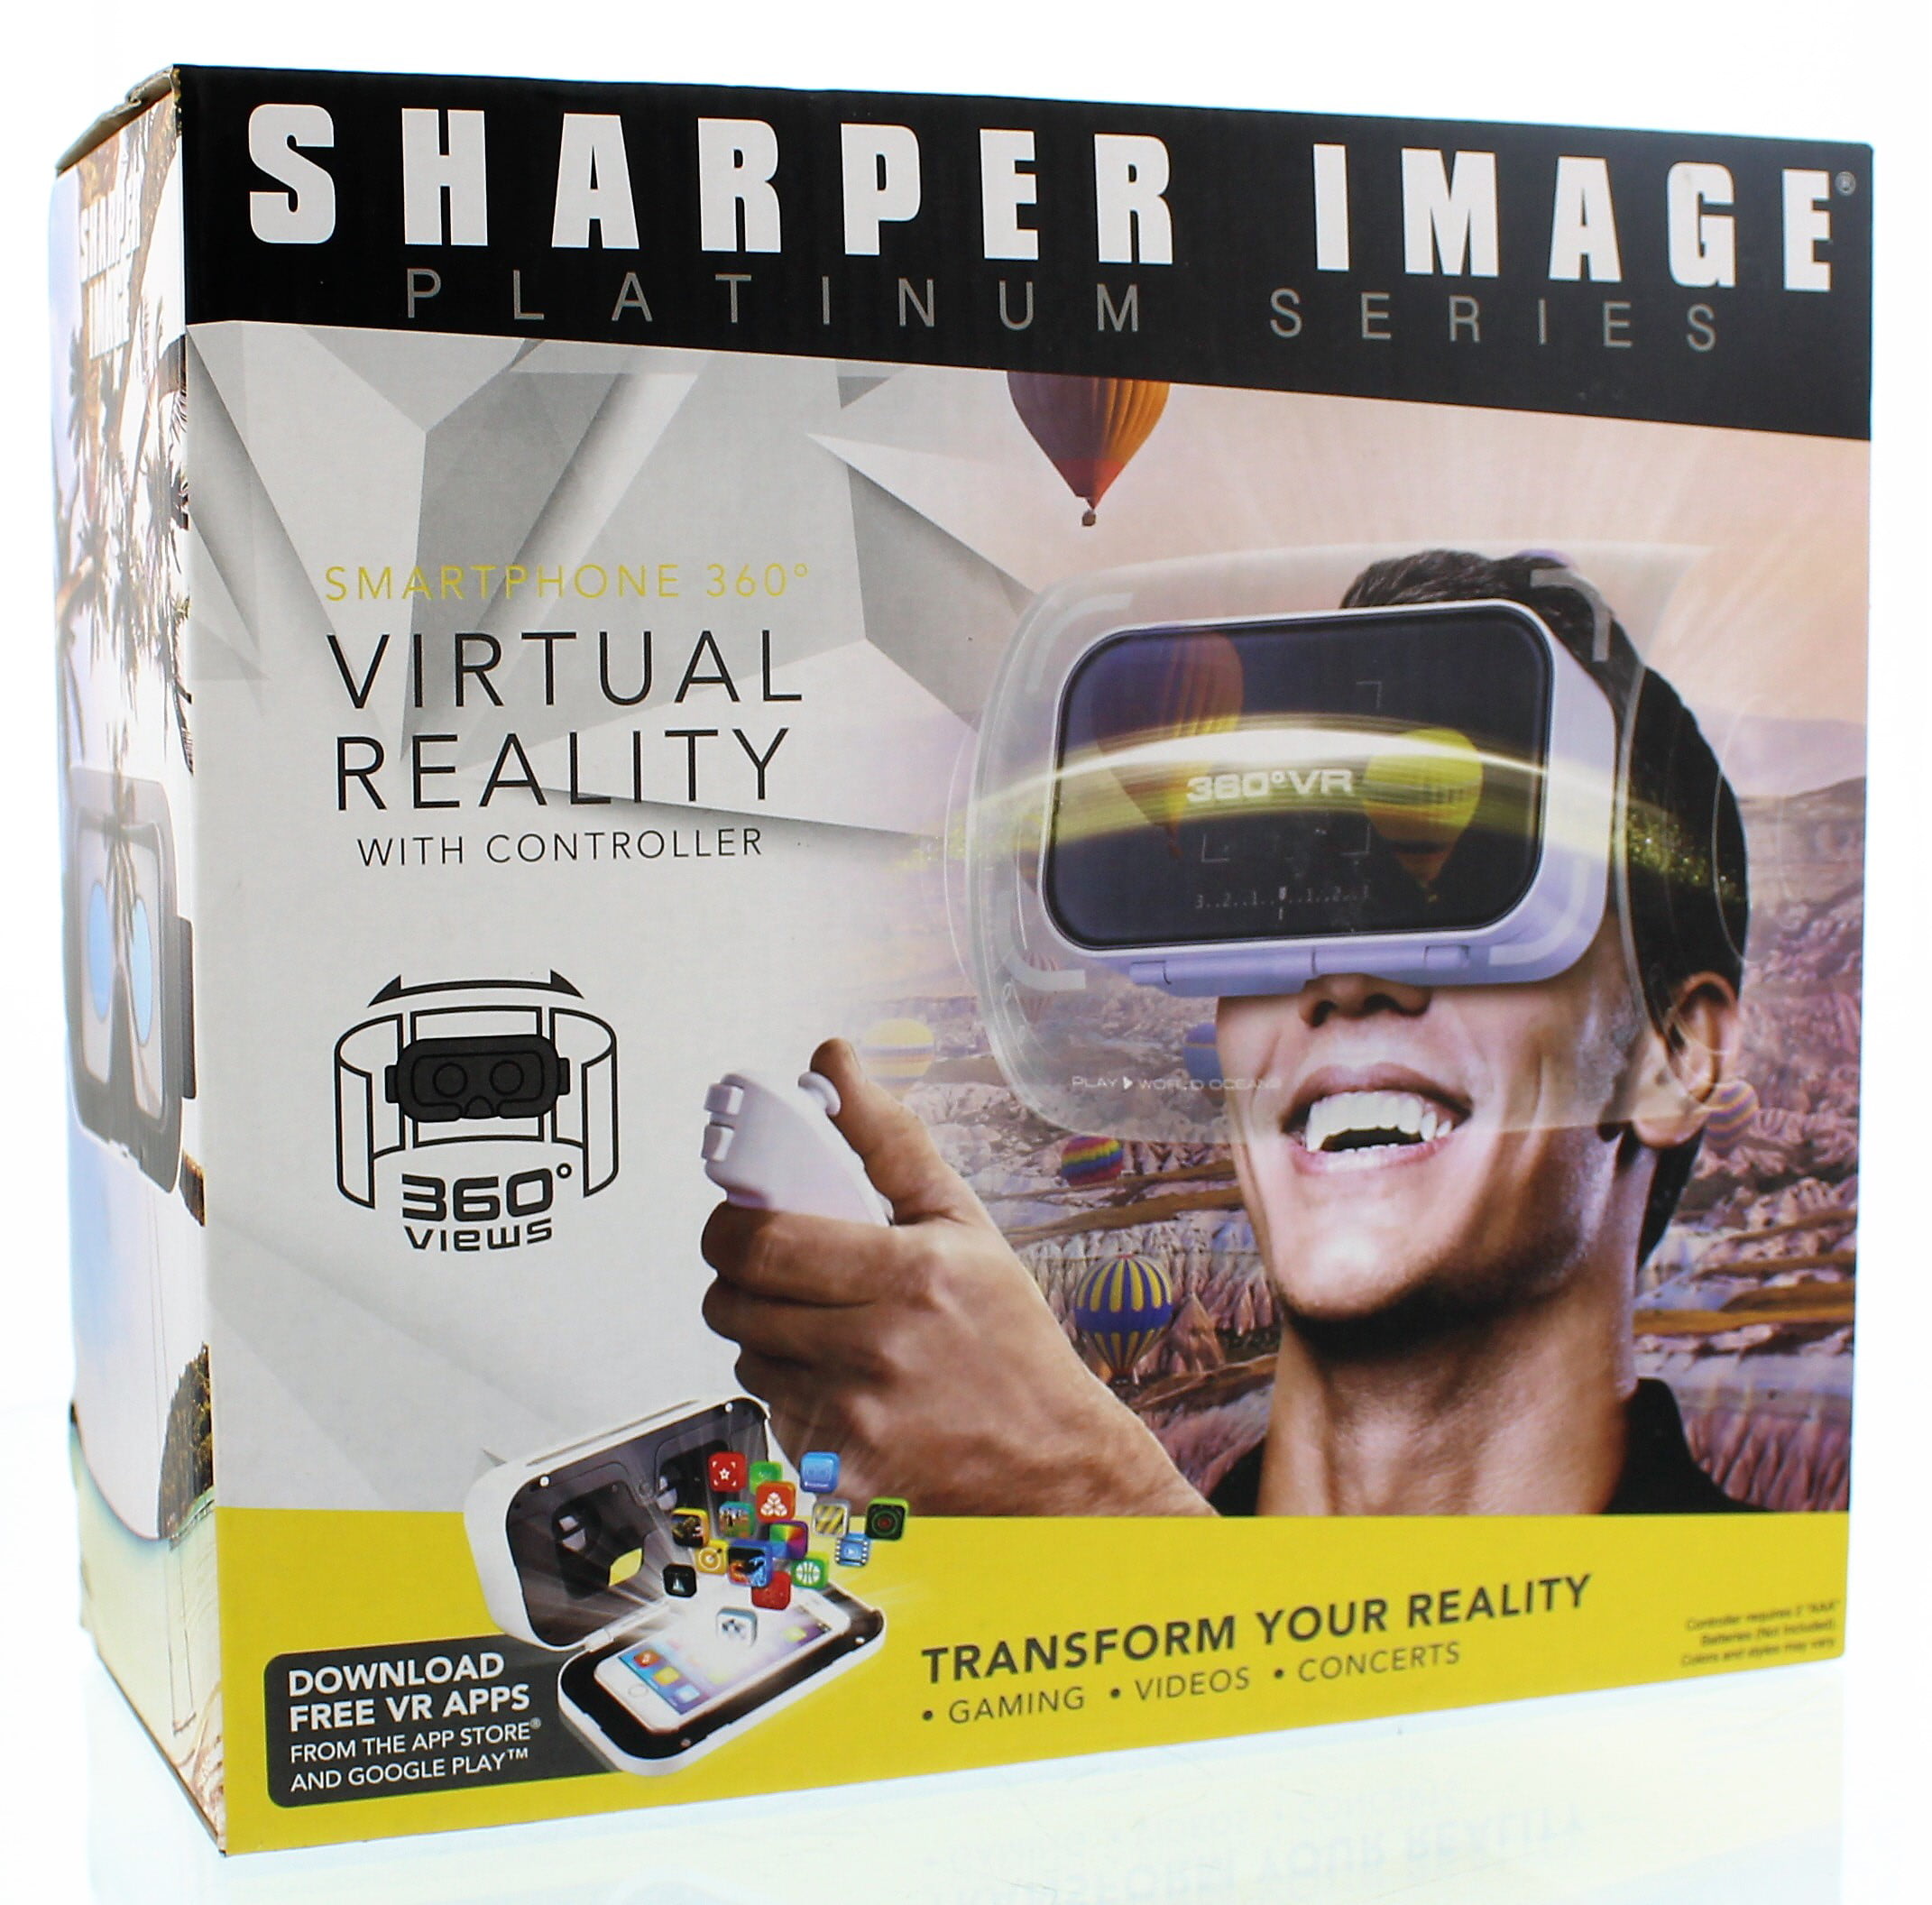 sharper image vr headset apps